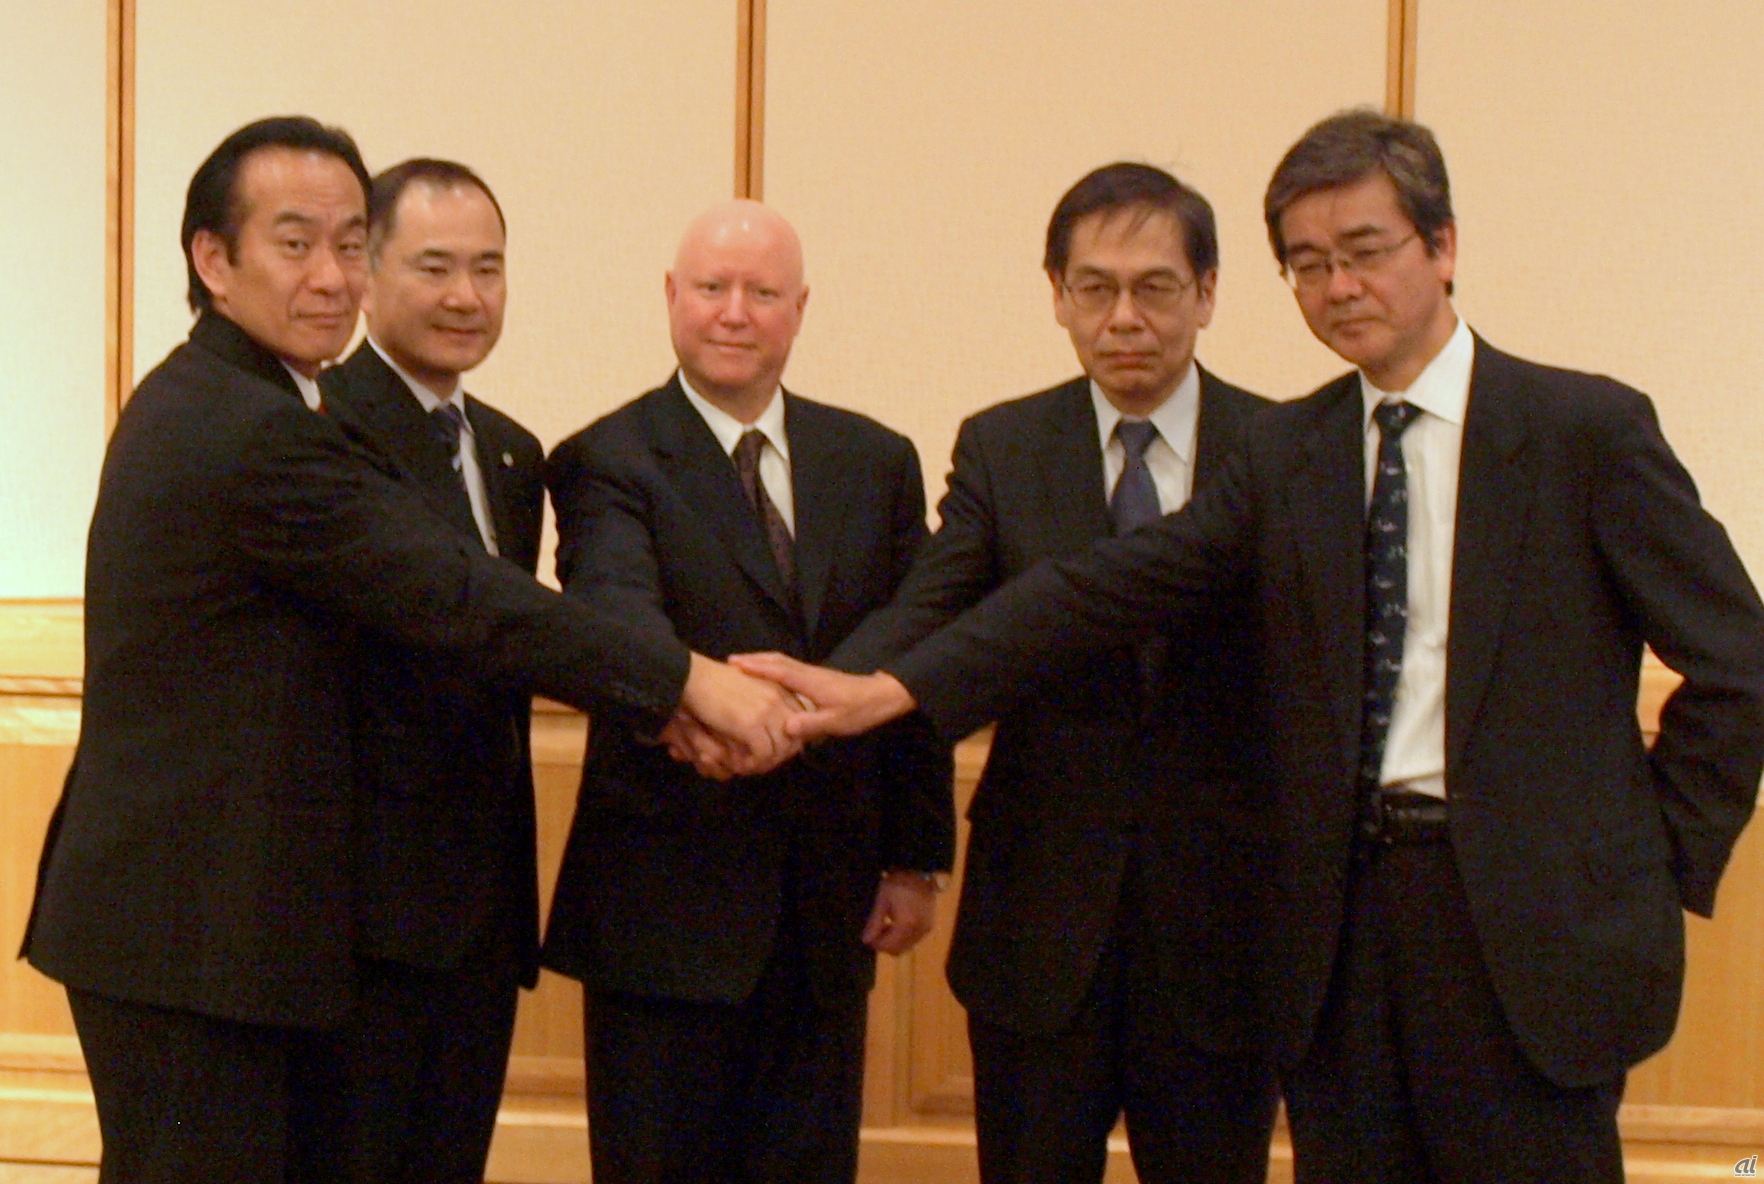 左からレッドハットの廣川社長、日立の熊崎ソフトウェア本部長、米Red Hatのジム・トットン副社長、富士通の堀洋一常務理事、NECの赤津氏